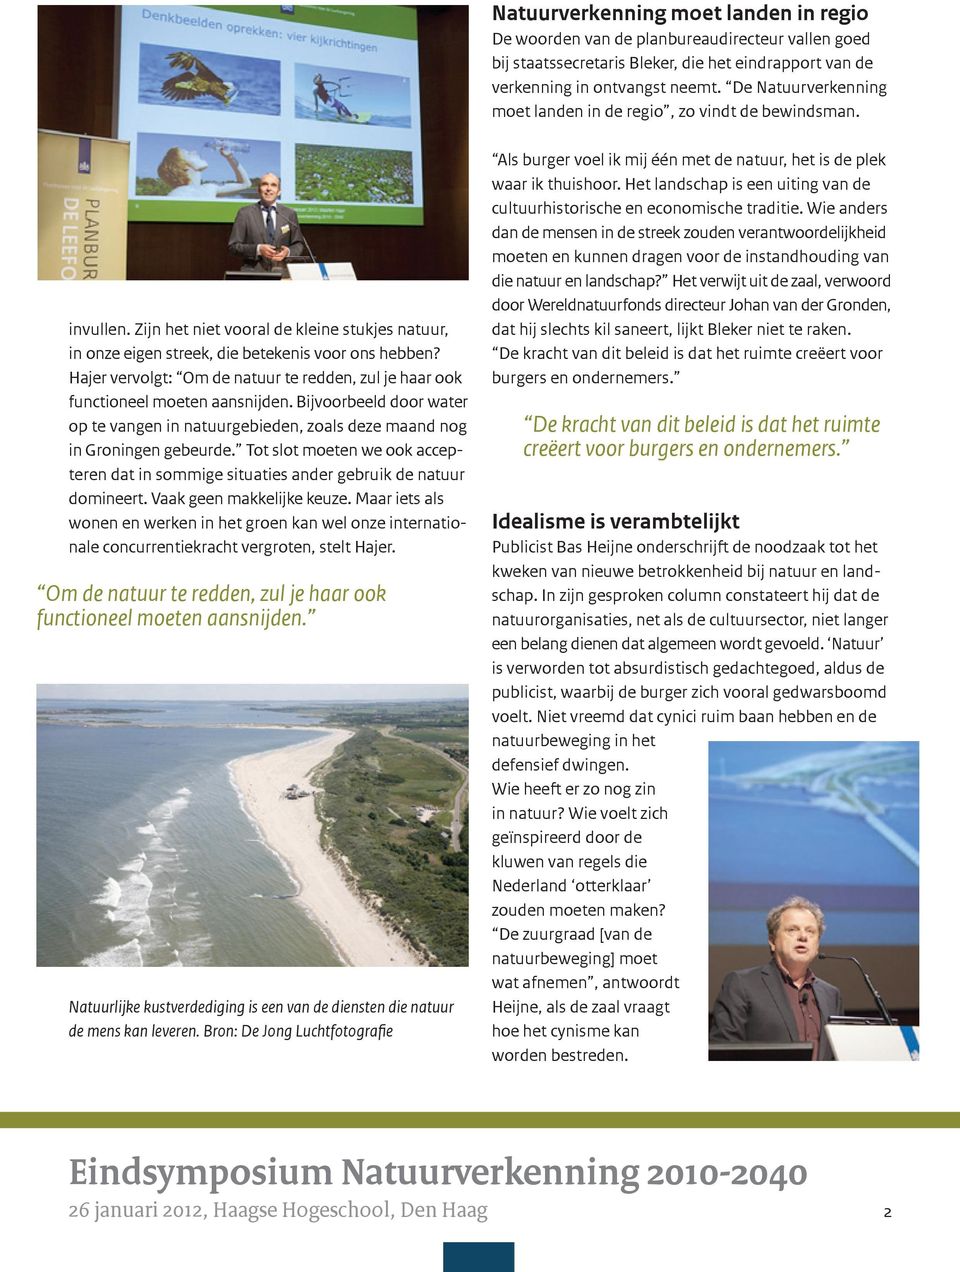 Hajer vervolgt: Om de natuur te redden, zul je haar ook functioneel moeten aansnijden. Bijvoorbeeld door water op te vangen in natuurgebieden, zoals deze maand nog in Groningen gebeurde.